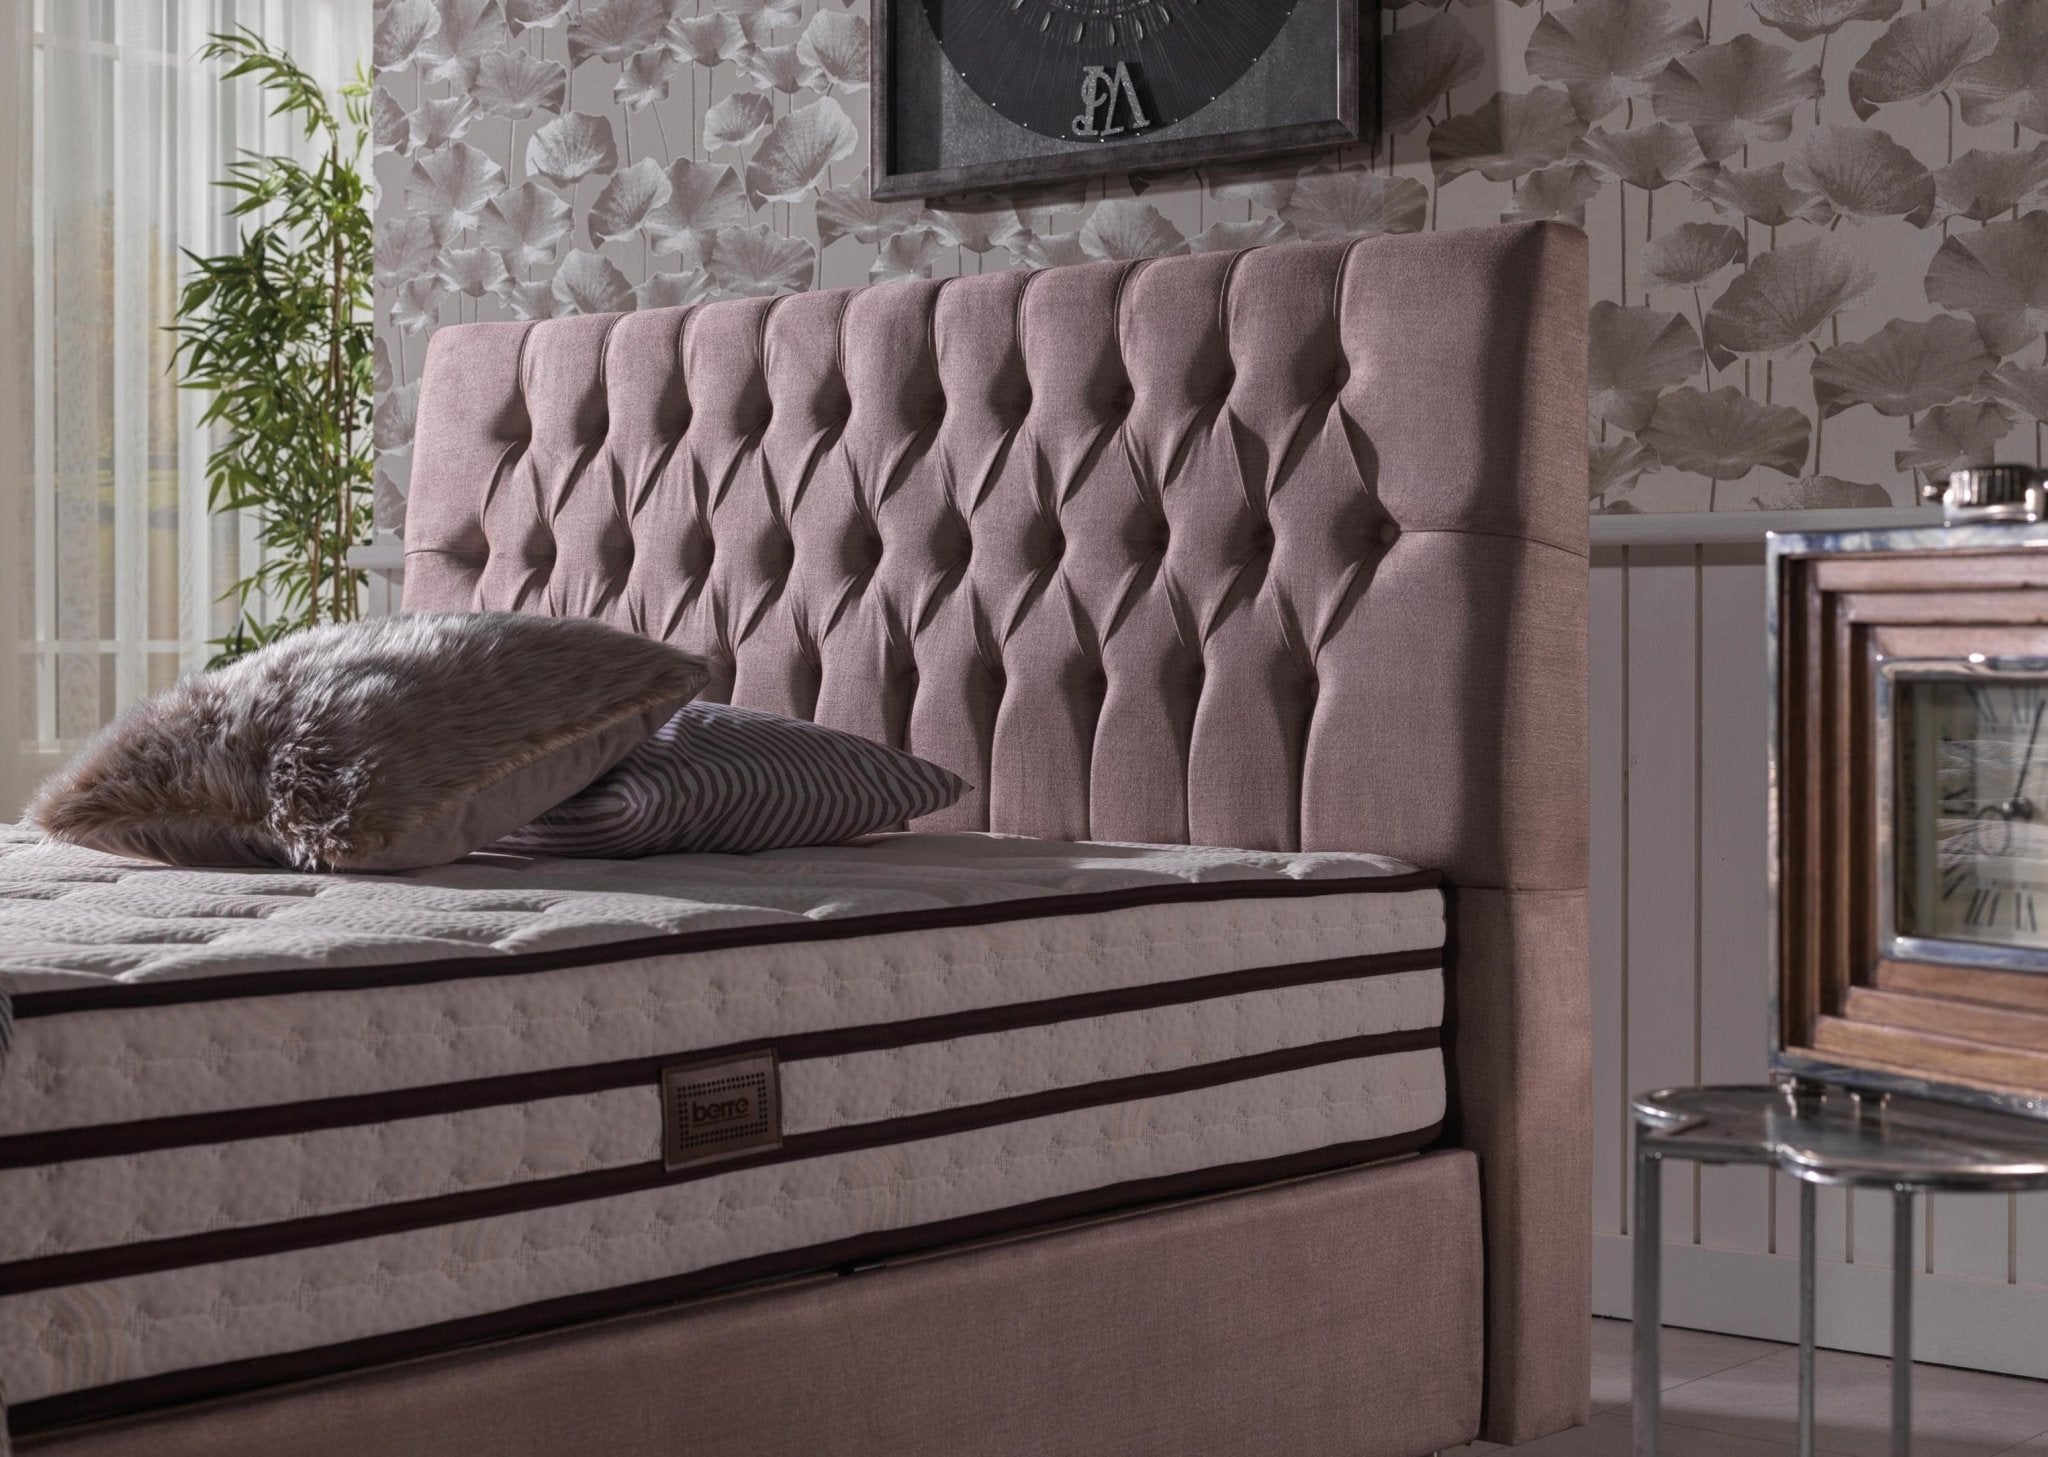 ANGEL Bed - Berre Furniture